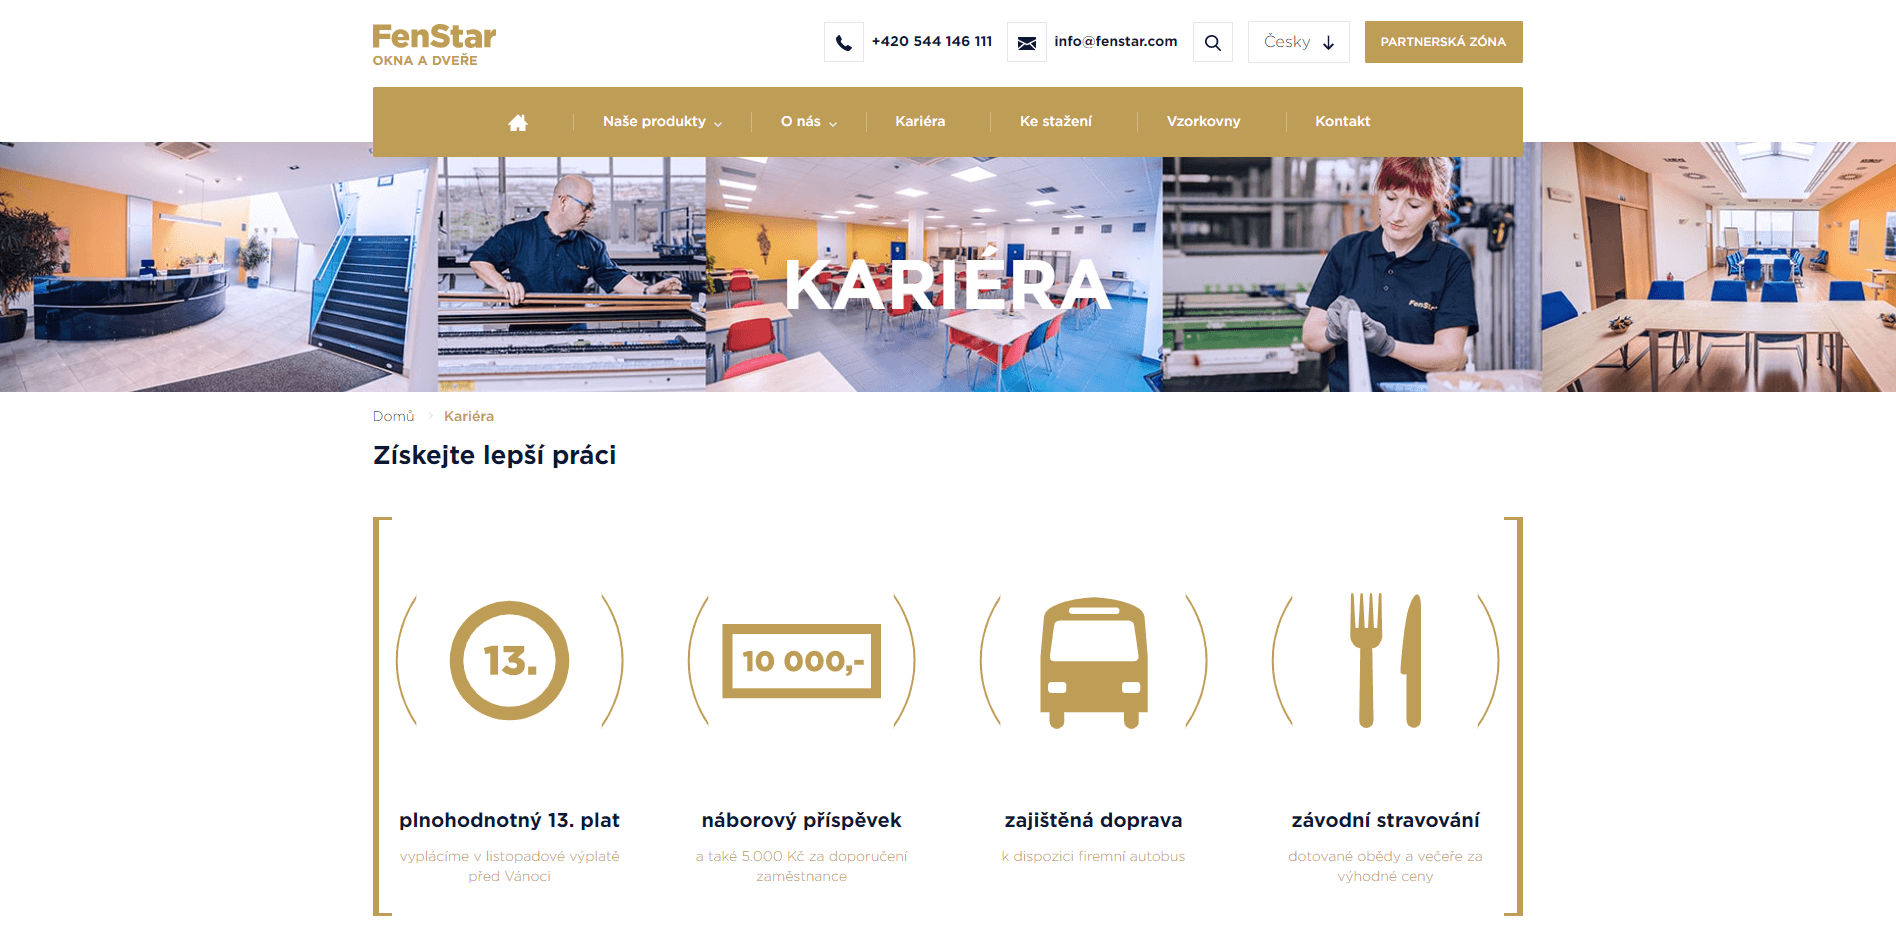 zobrazení kariérních stránek z webu fenstar.cz. Barevný banner složený z fotografií a pod ním výpis firemních benefitů.